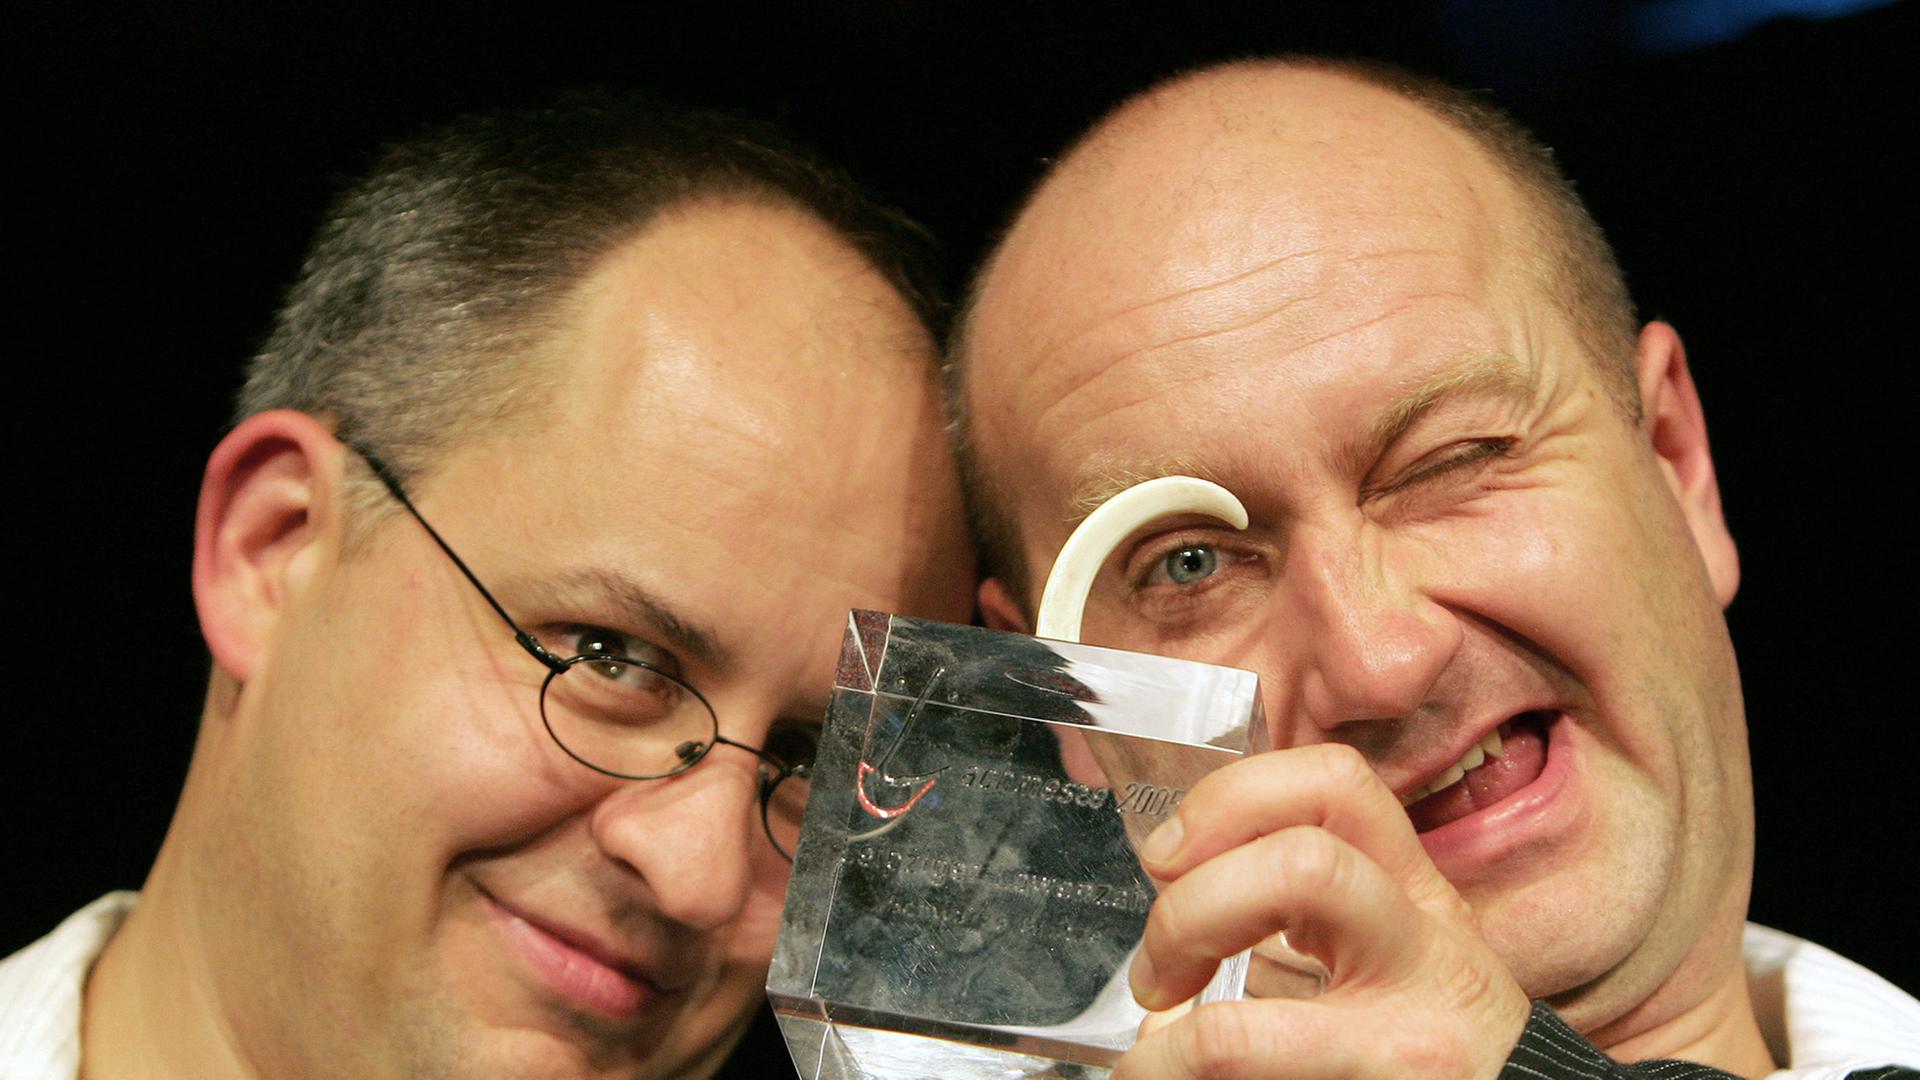 Die Potsdamer Musikkabarettisten Dirk Pursche (r) und Stefan Klucke zeigen am 12.10.2006 zum Auftakt der Leipziger Lachmesse den Kleinkunstpreis Leipziger Löwenzahn.